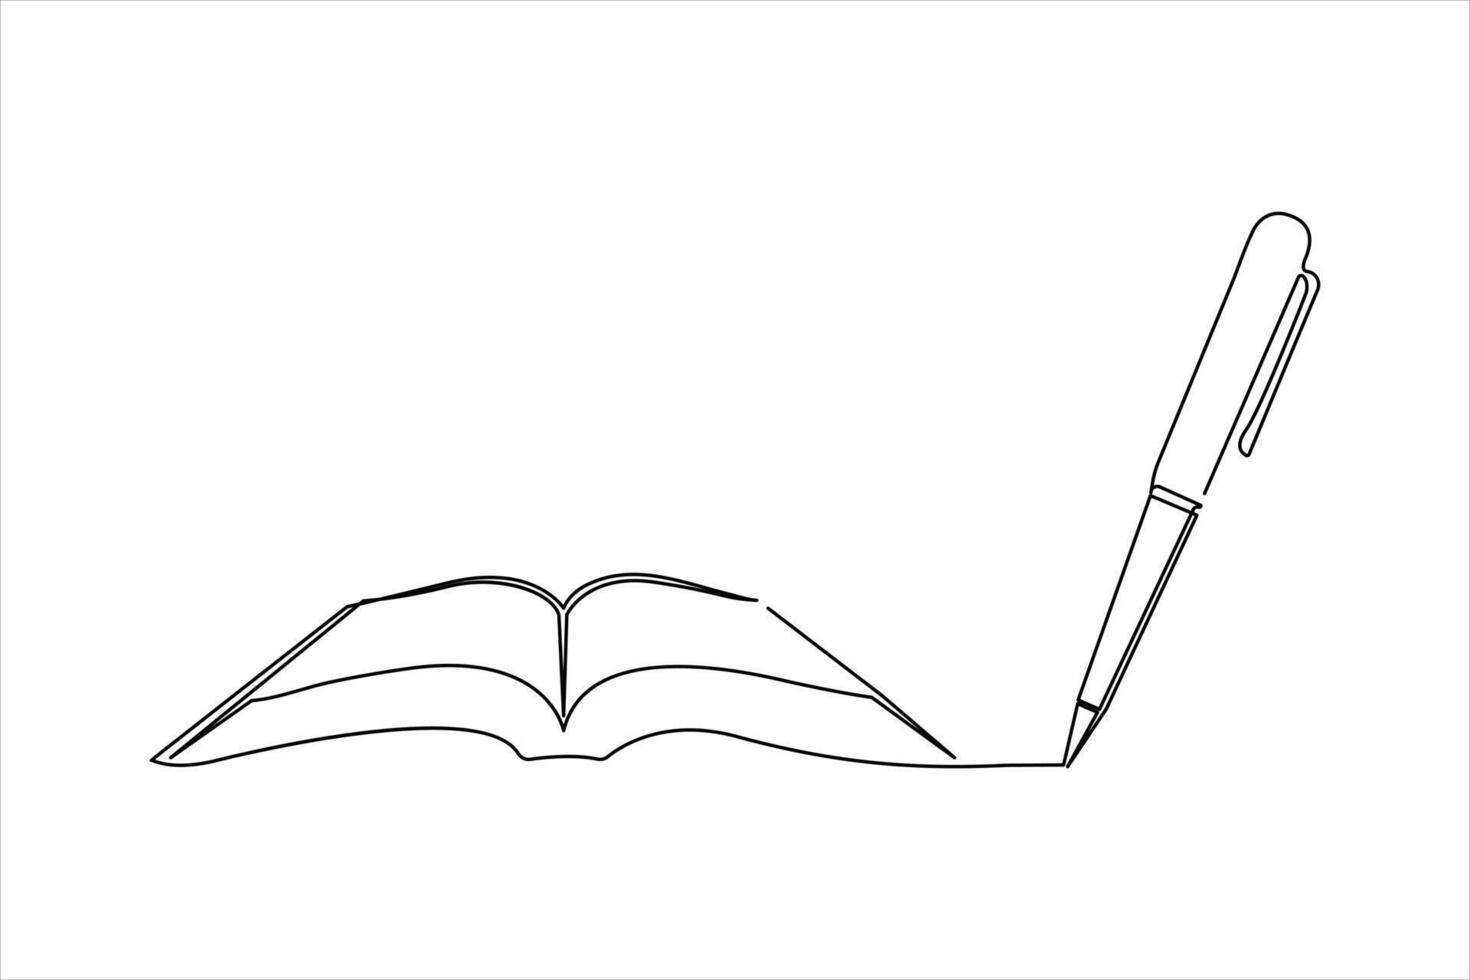 doorlopend een lijn boek met pen tekening schets vector illustratie en wereld boek dag concept ontwerp.